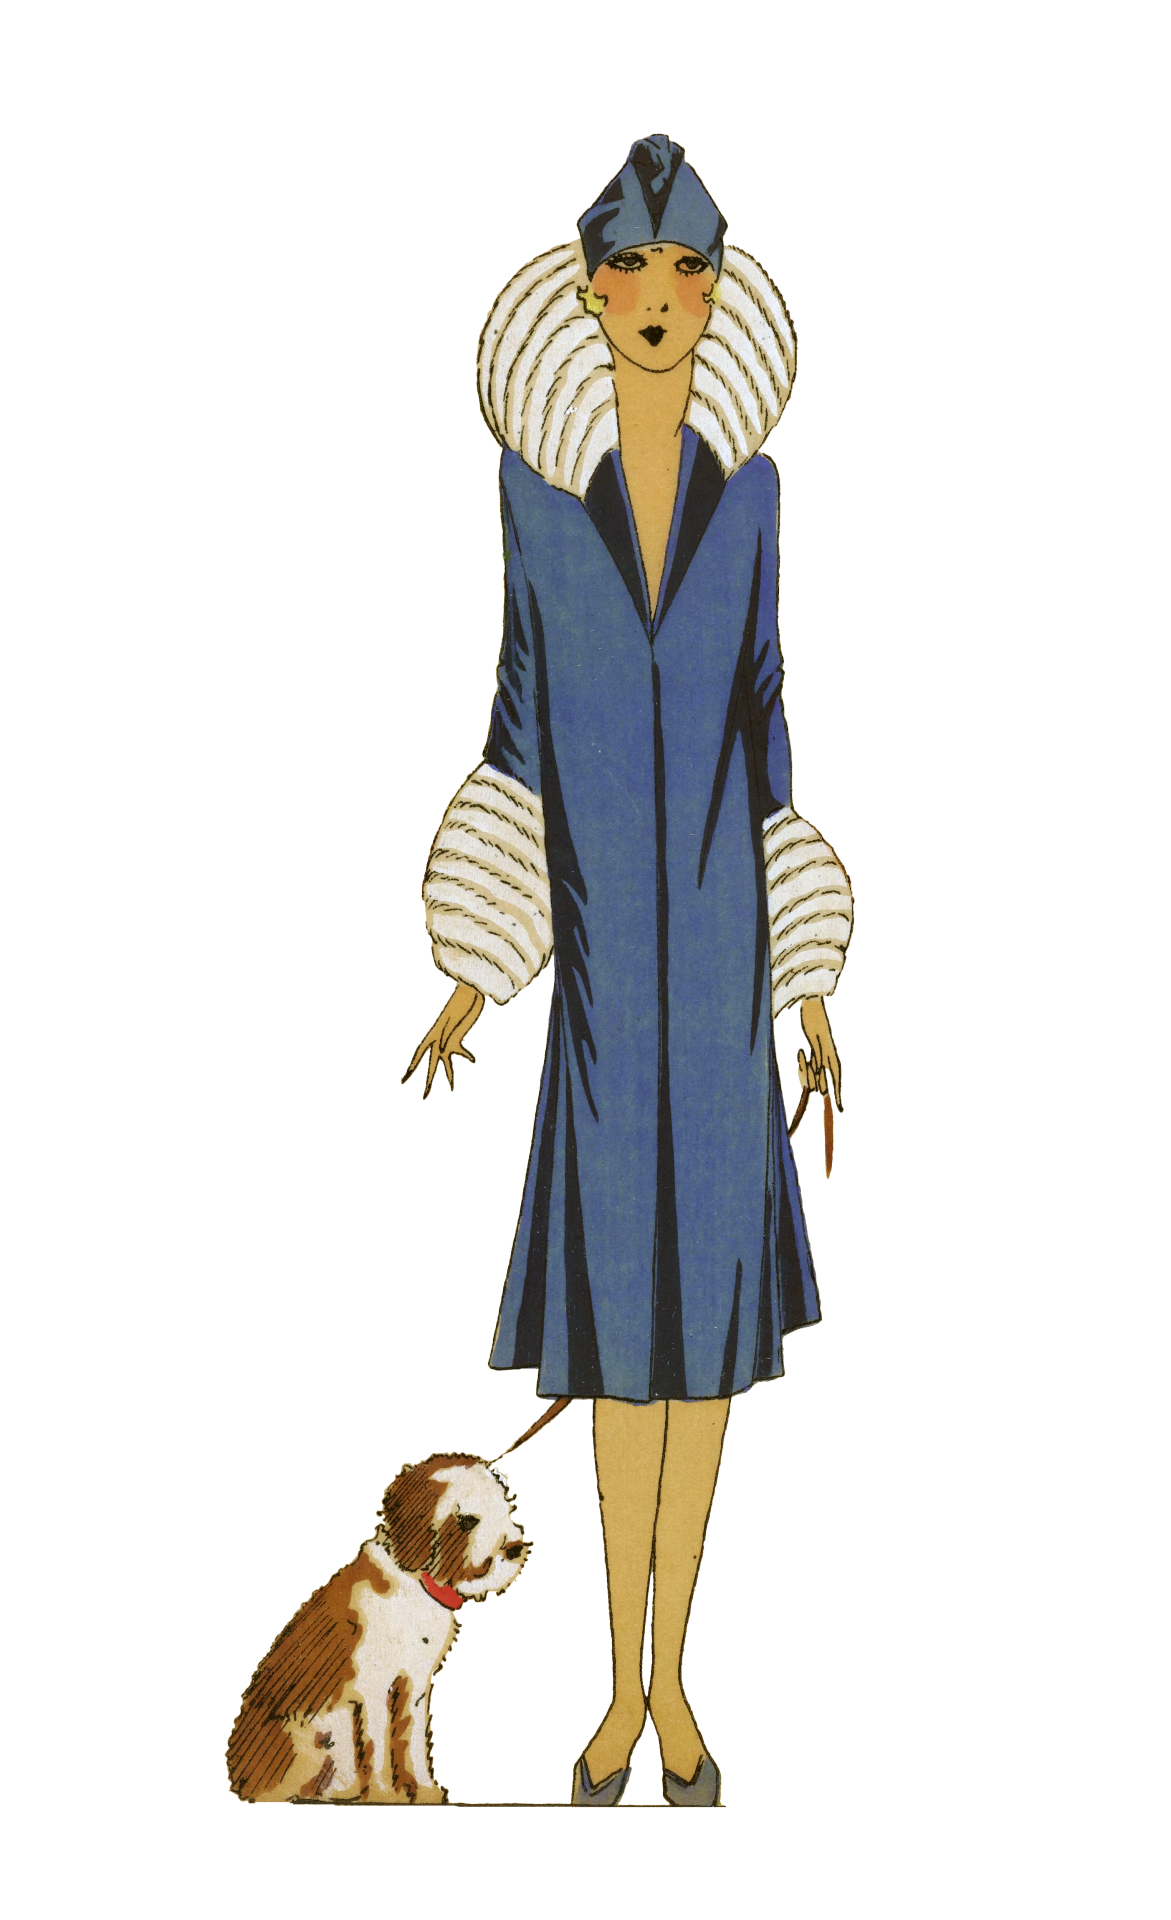 Vintage Fashion 1925 Woman